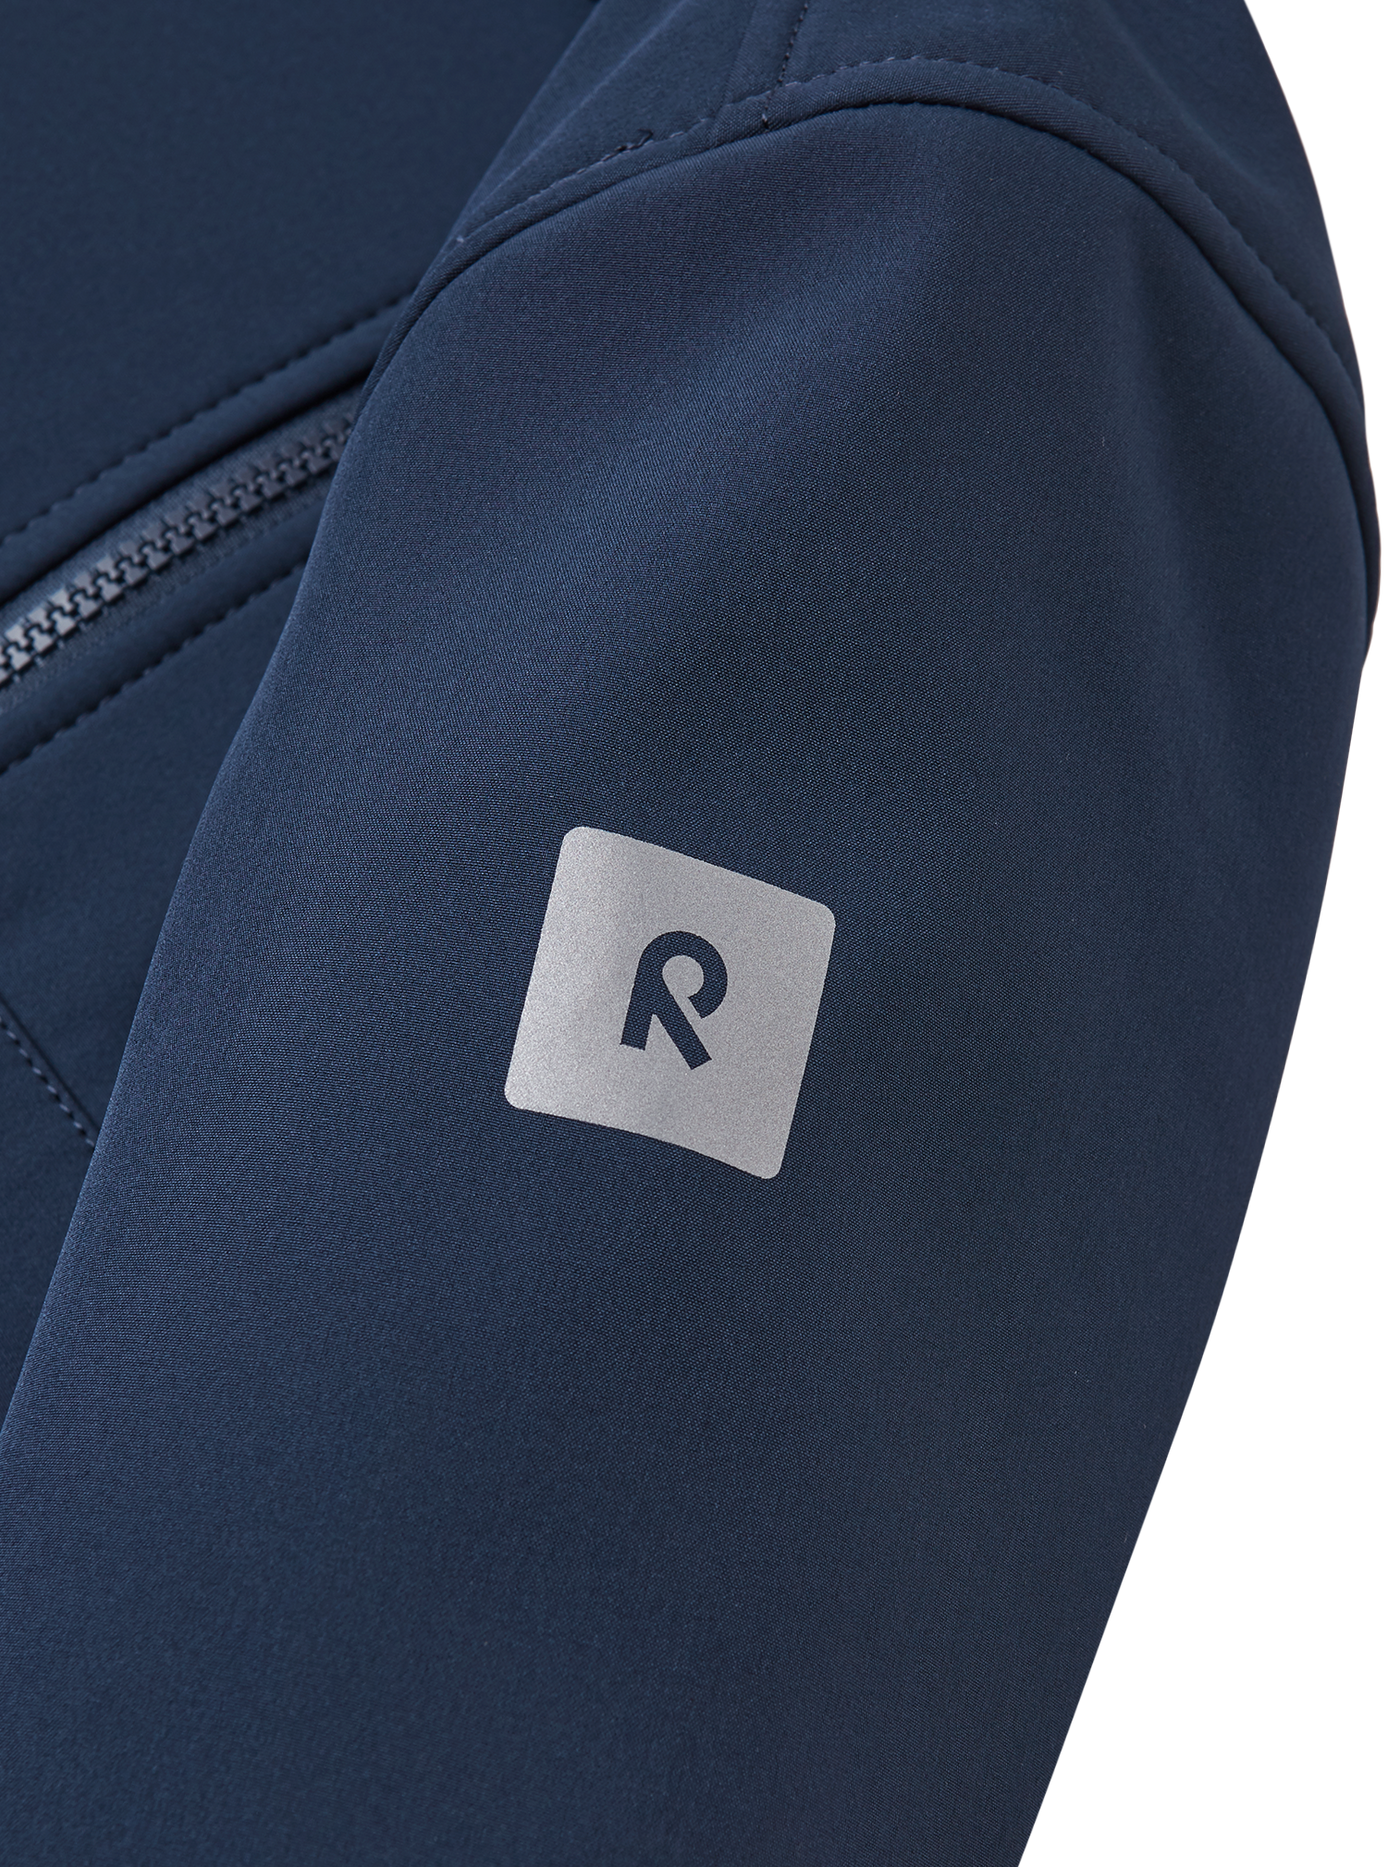 Reima Espoo tummansininen softshell takki lähikuva hihan heijastavasta  R-logosta